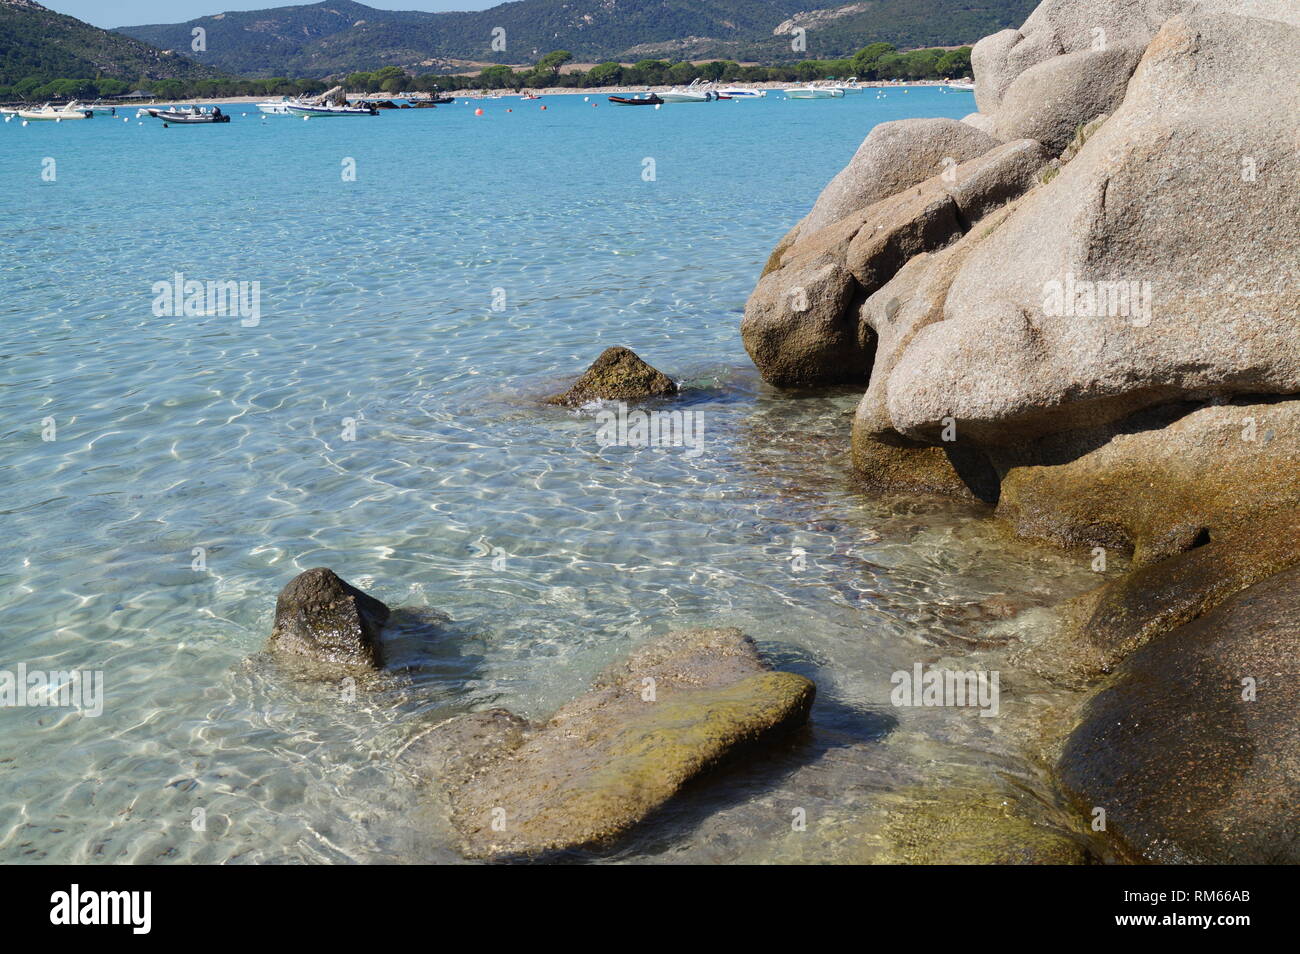 Belles plages - Santa Giulia Brach, Corse du Sud, Porto Vecchio Corse Banque D'Images